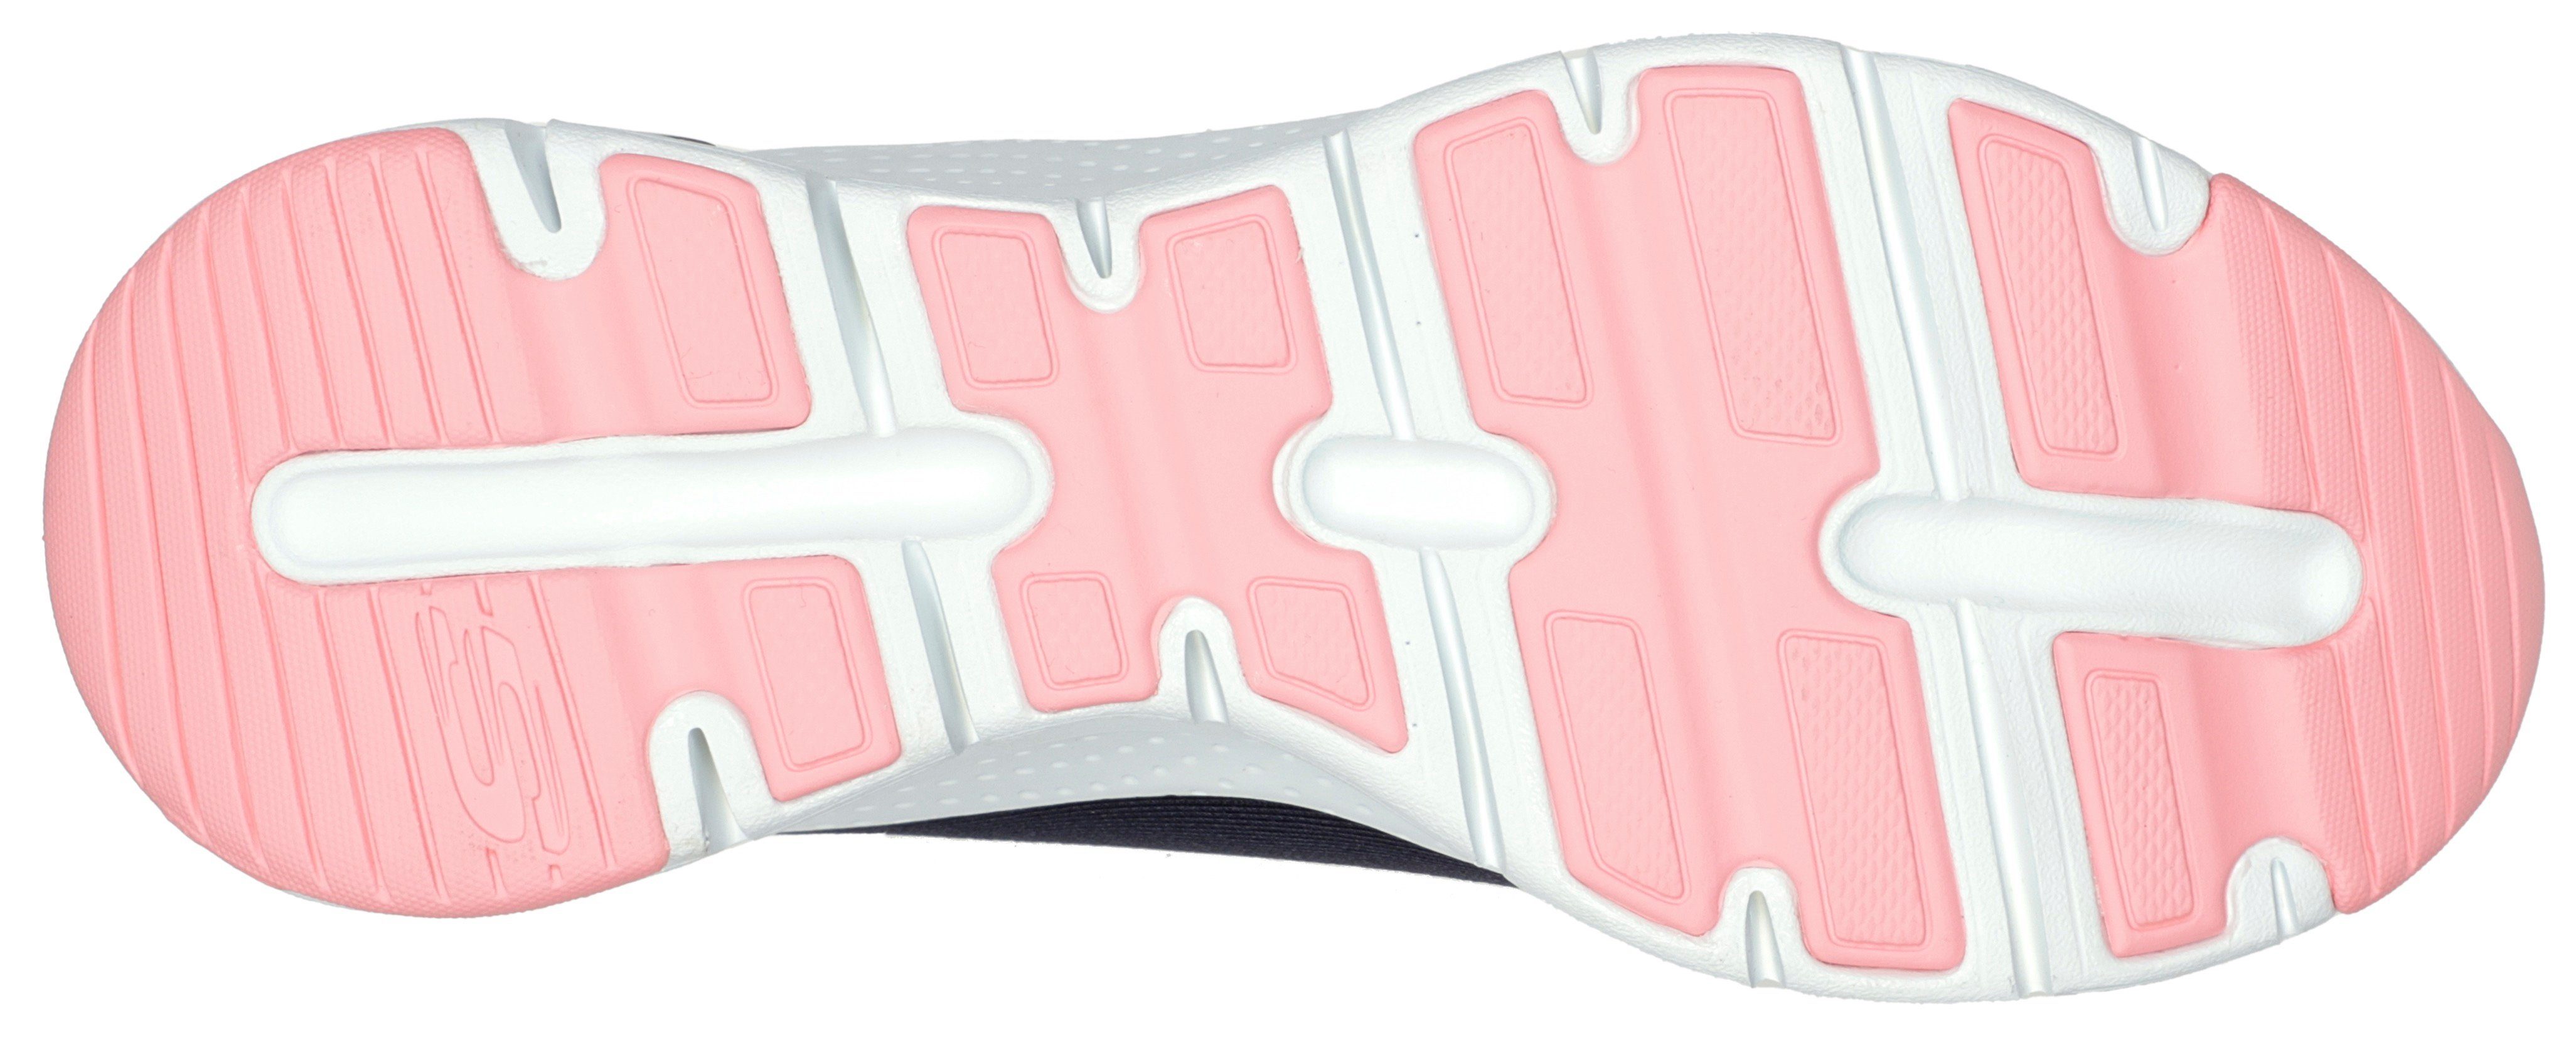 Sneaker Logo-Emblem FIT Skechers mit navy-koralle ARCH seitlichem